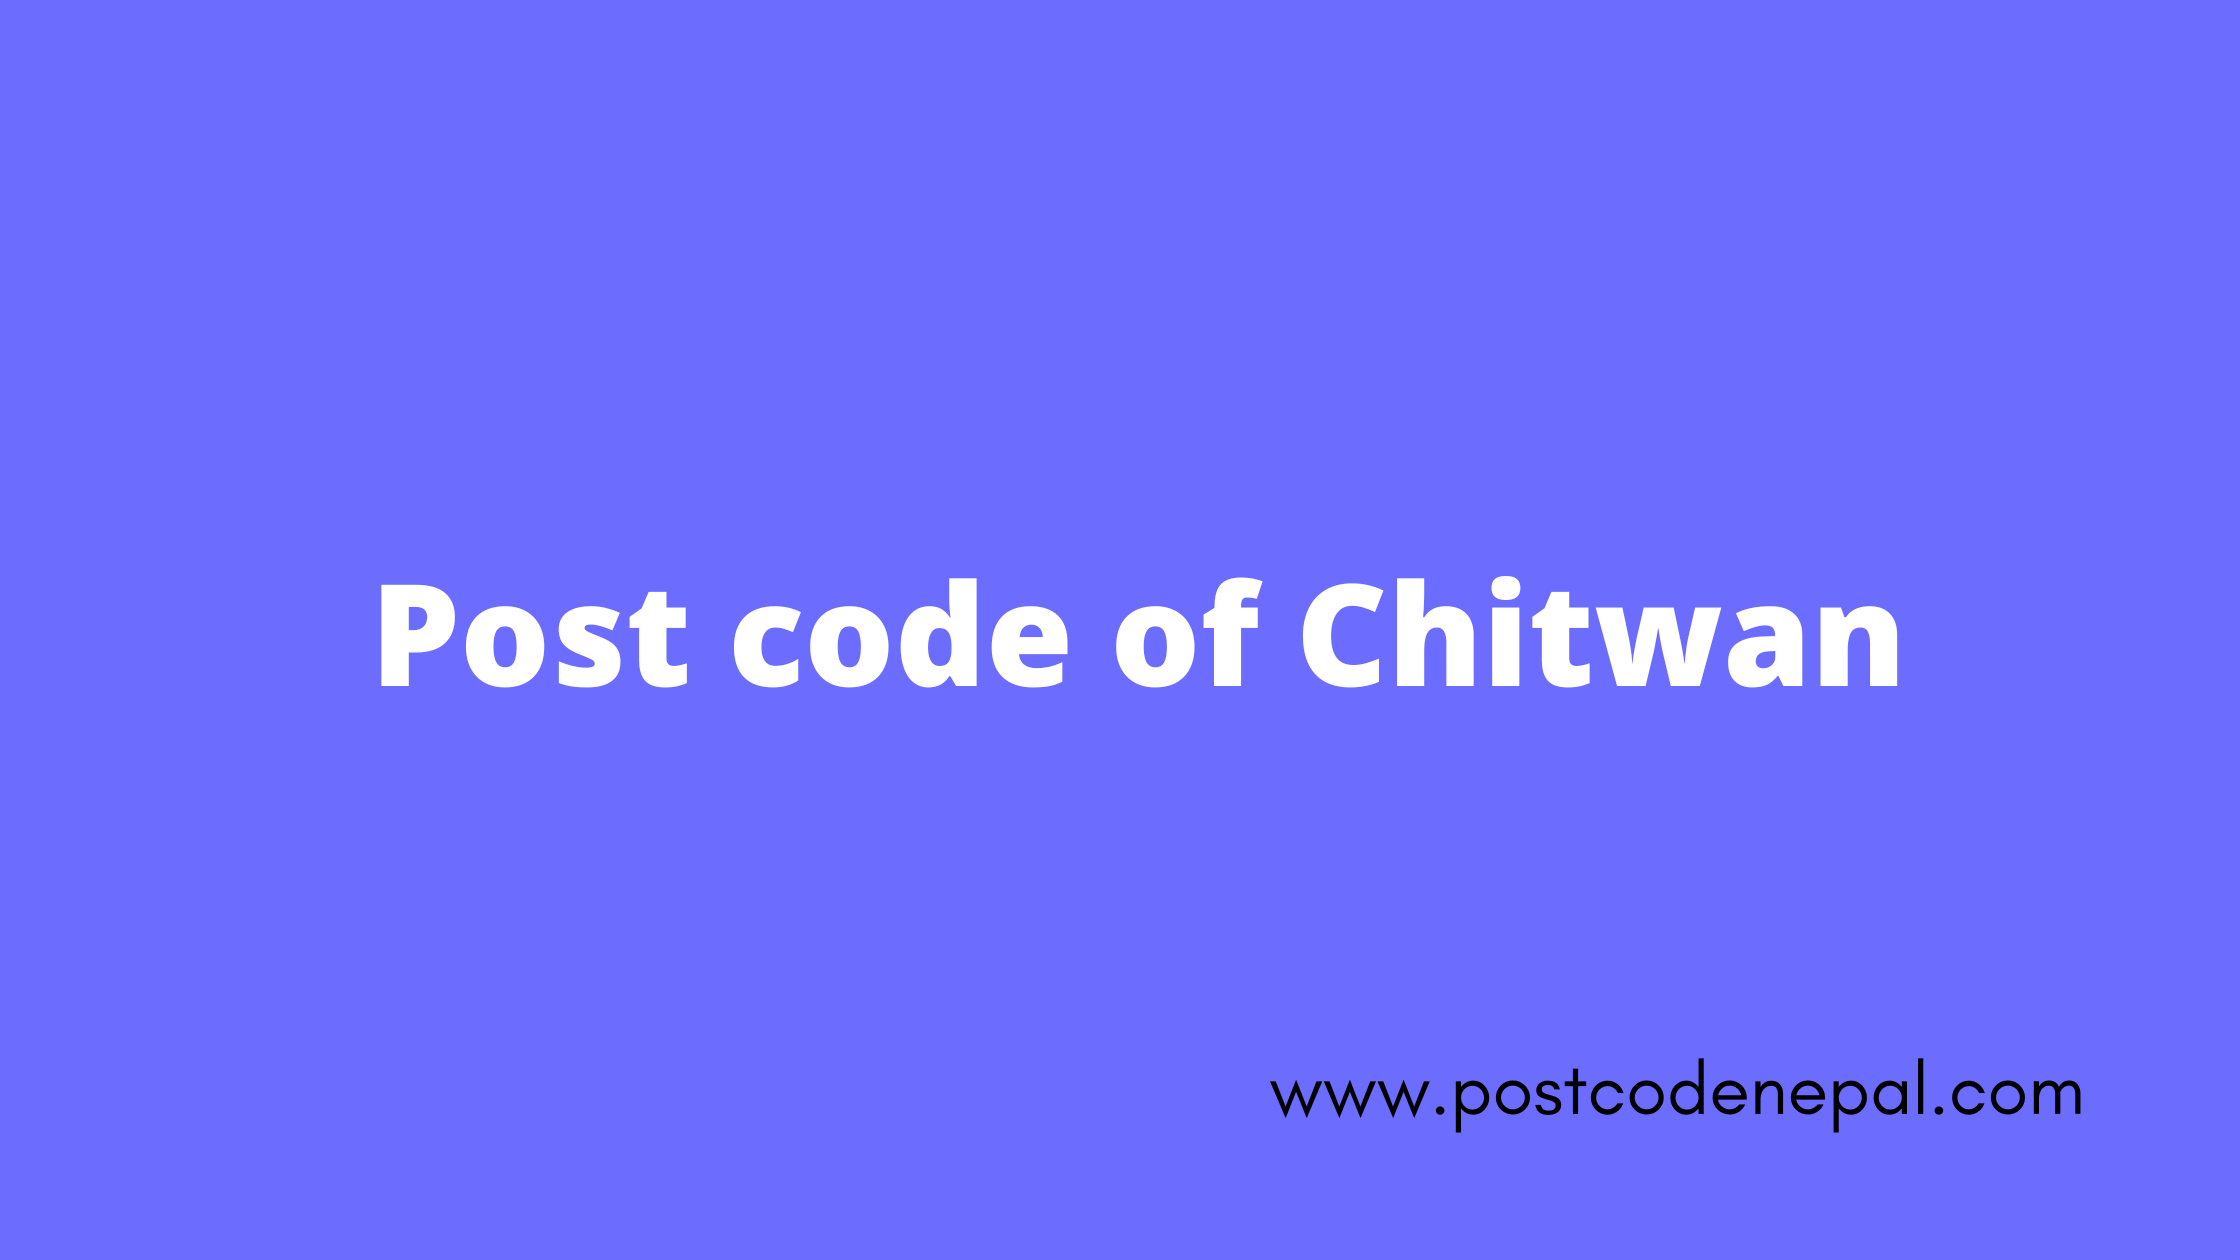 Postal code of Chitawan